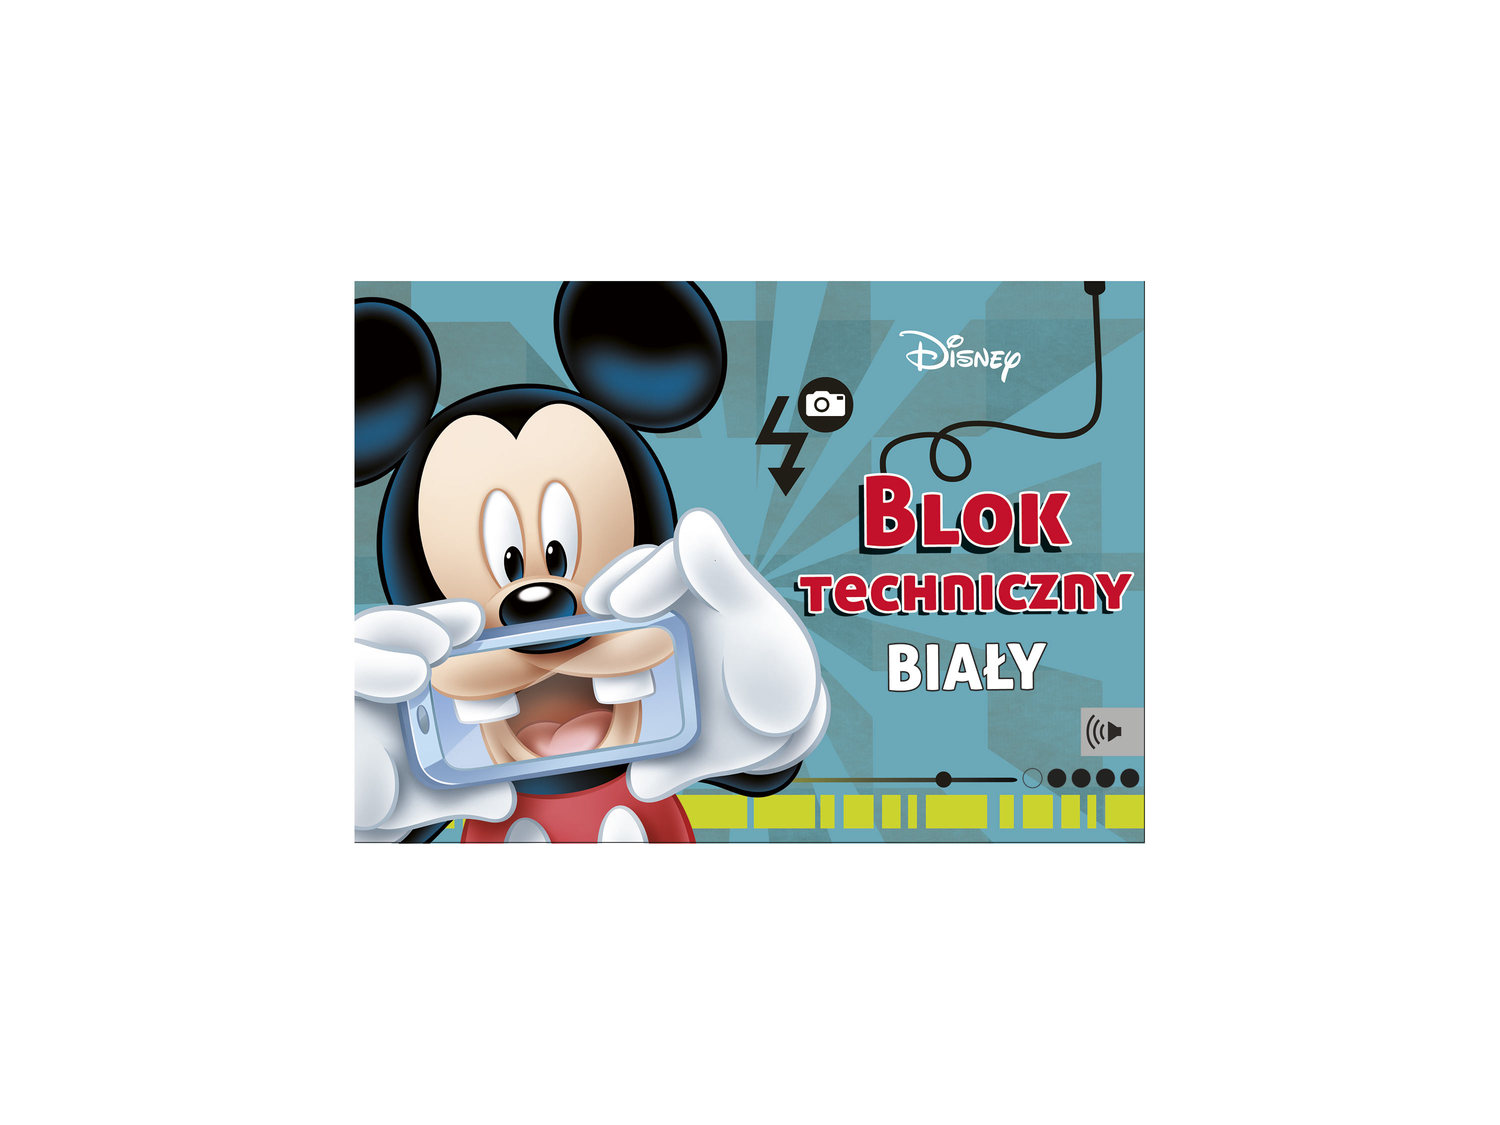 Blok A4 Disney techniczny, 10 kartek , cena 1,49 PLN  
-  kolorowanka na pierwszej stronie